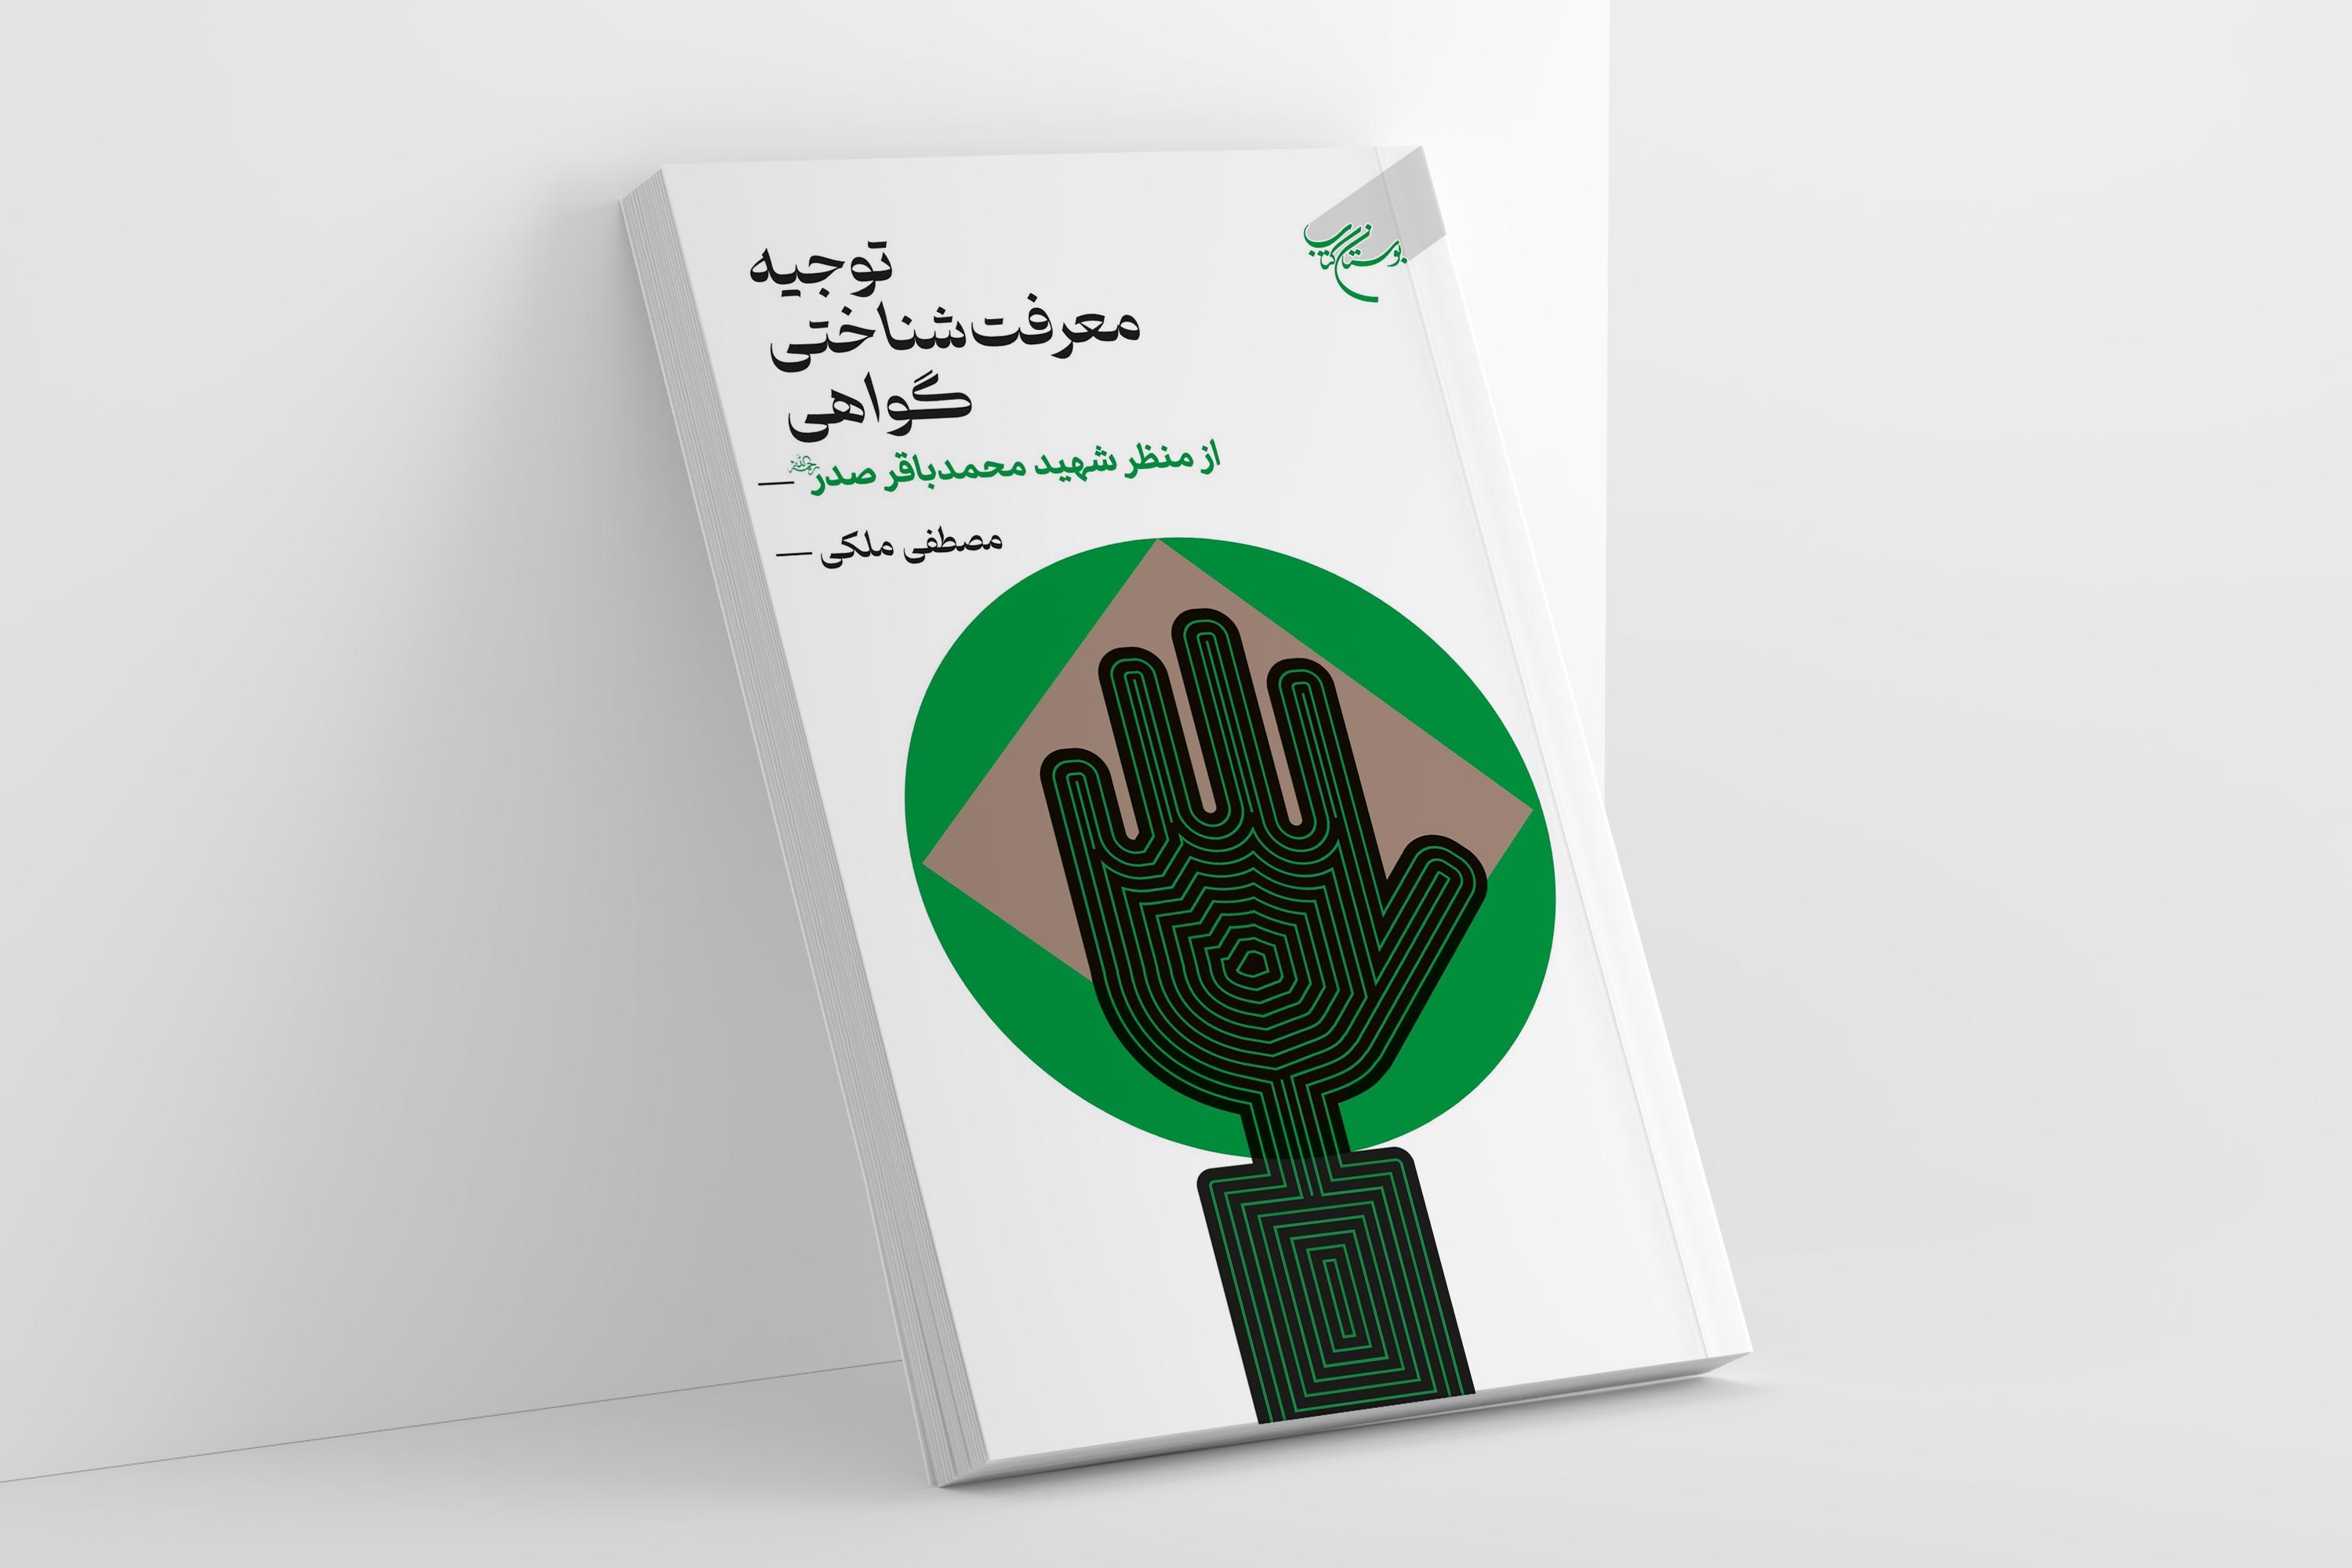 کتاب «توجیه معرفت شناختی گواهی از منظر شهید محمد باقر صدر» روانه بازار نشر شد